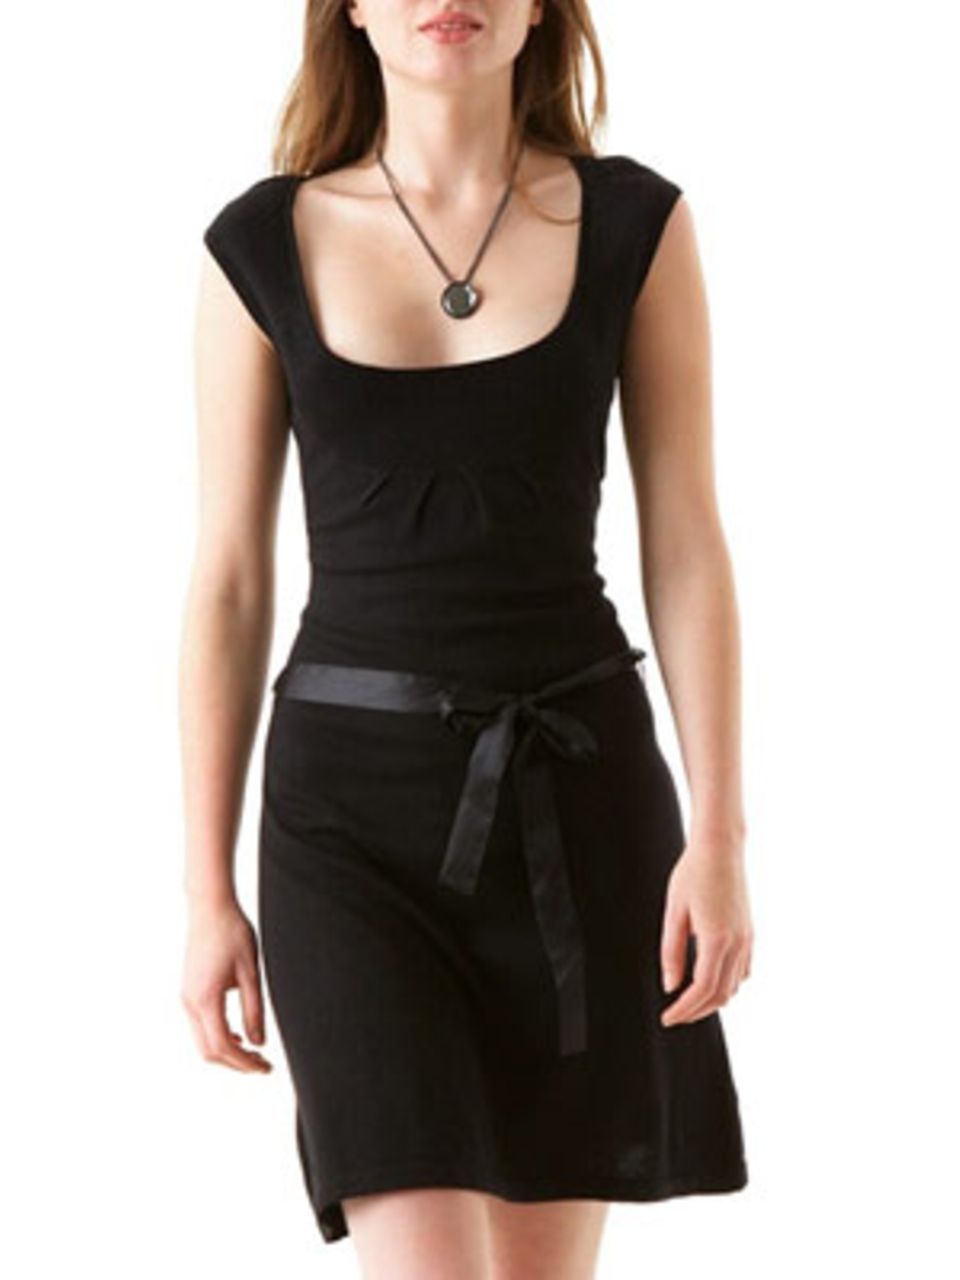 Strickkleid mit Gürtel mit glänzendem Band auf der Taille; 29,90 Euro; von Promod